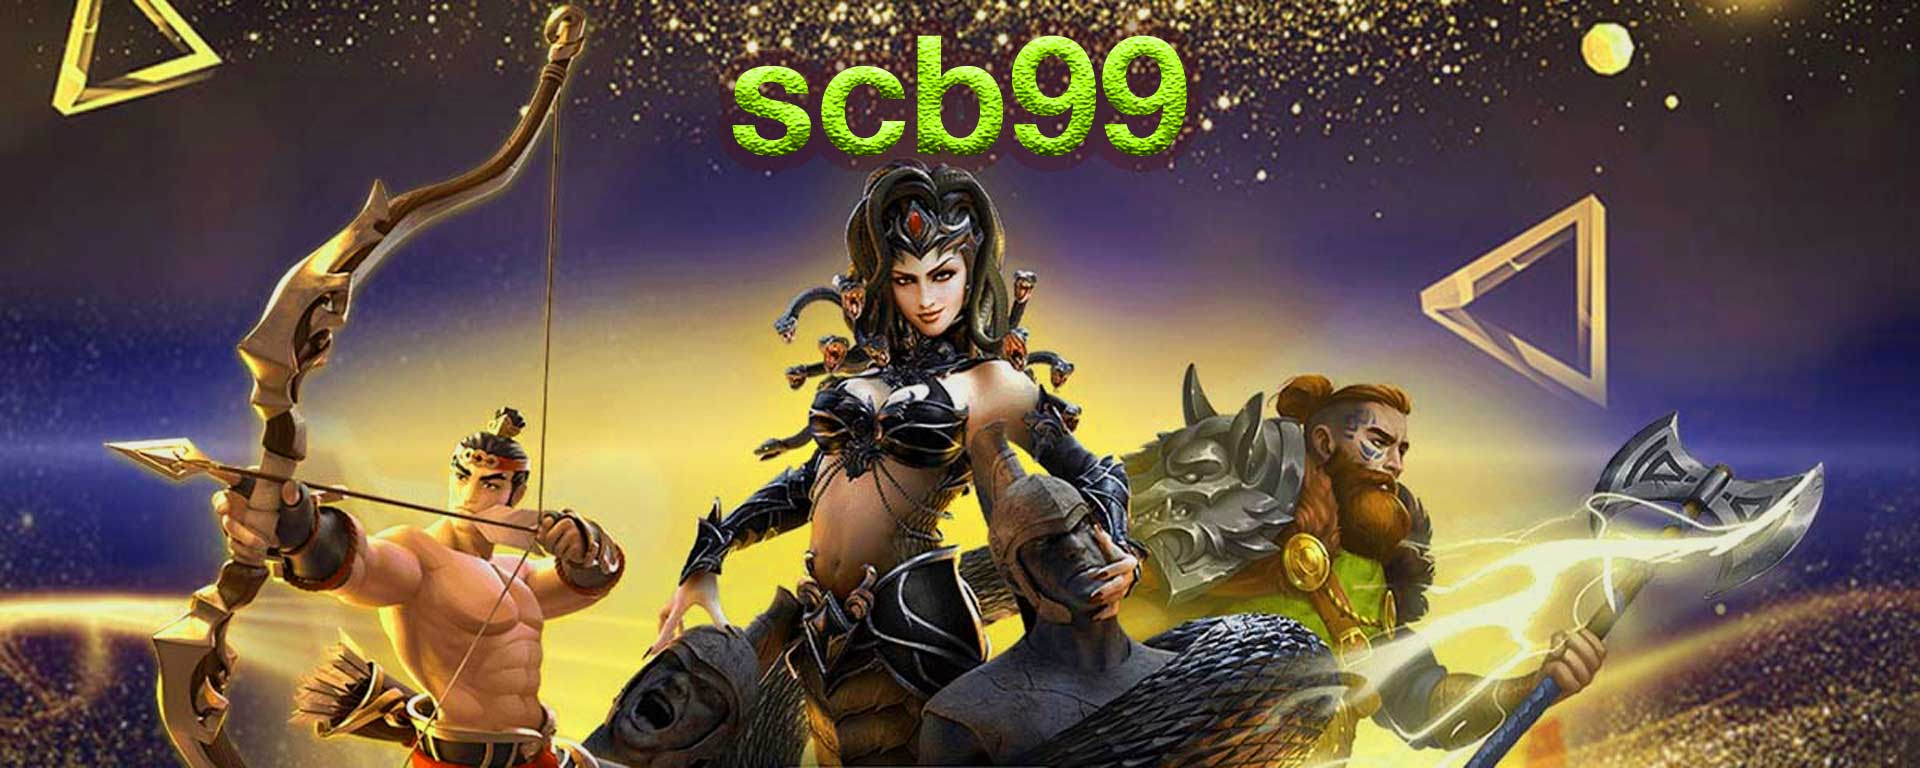 SCB99 สล็อตออนไลน์ สล็อต ฝาก-ถอน true wallet | superslot888